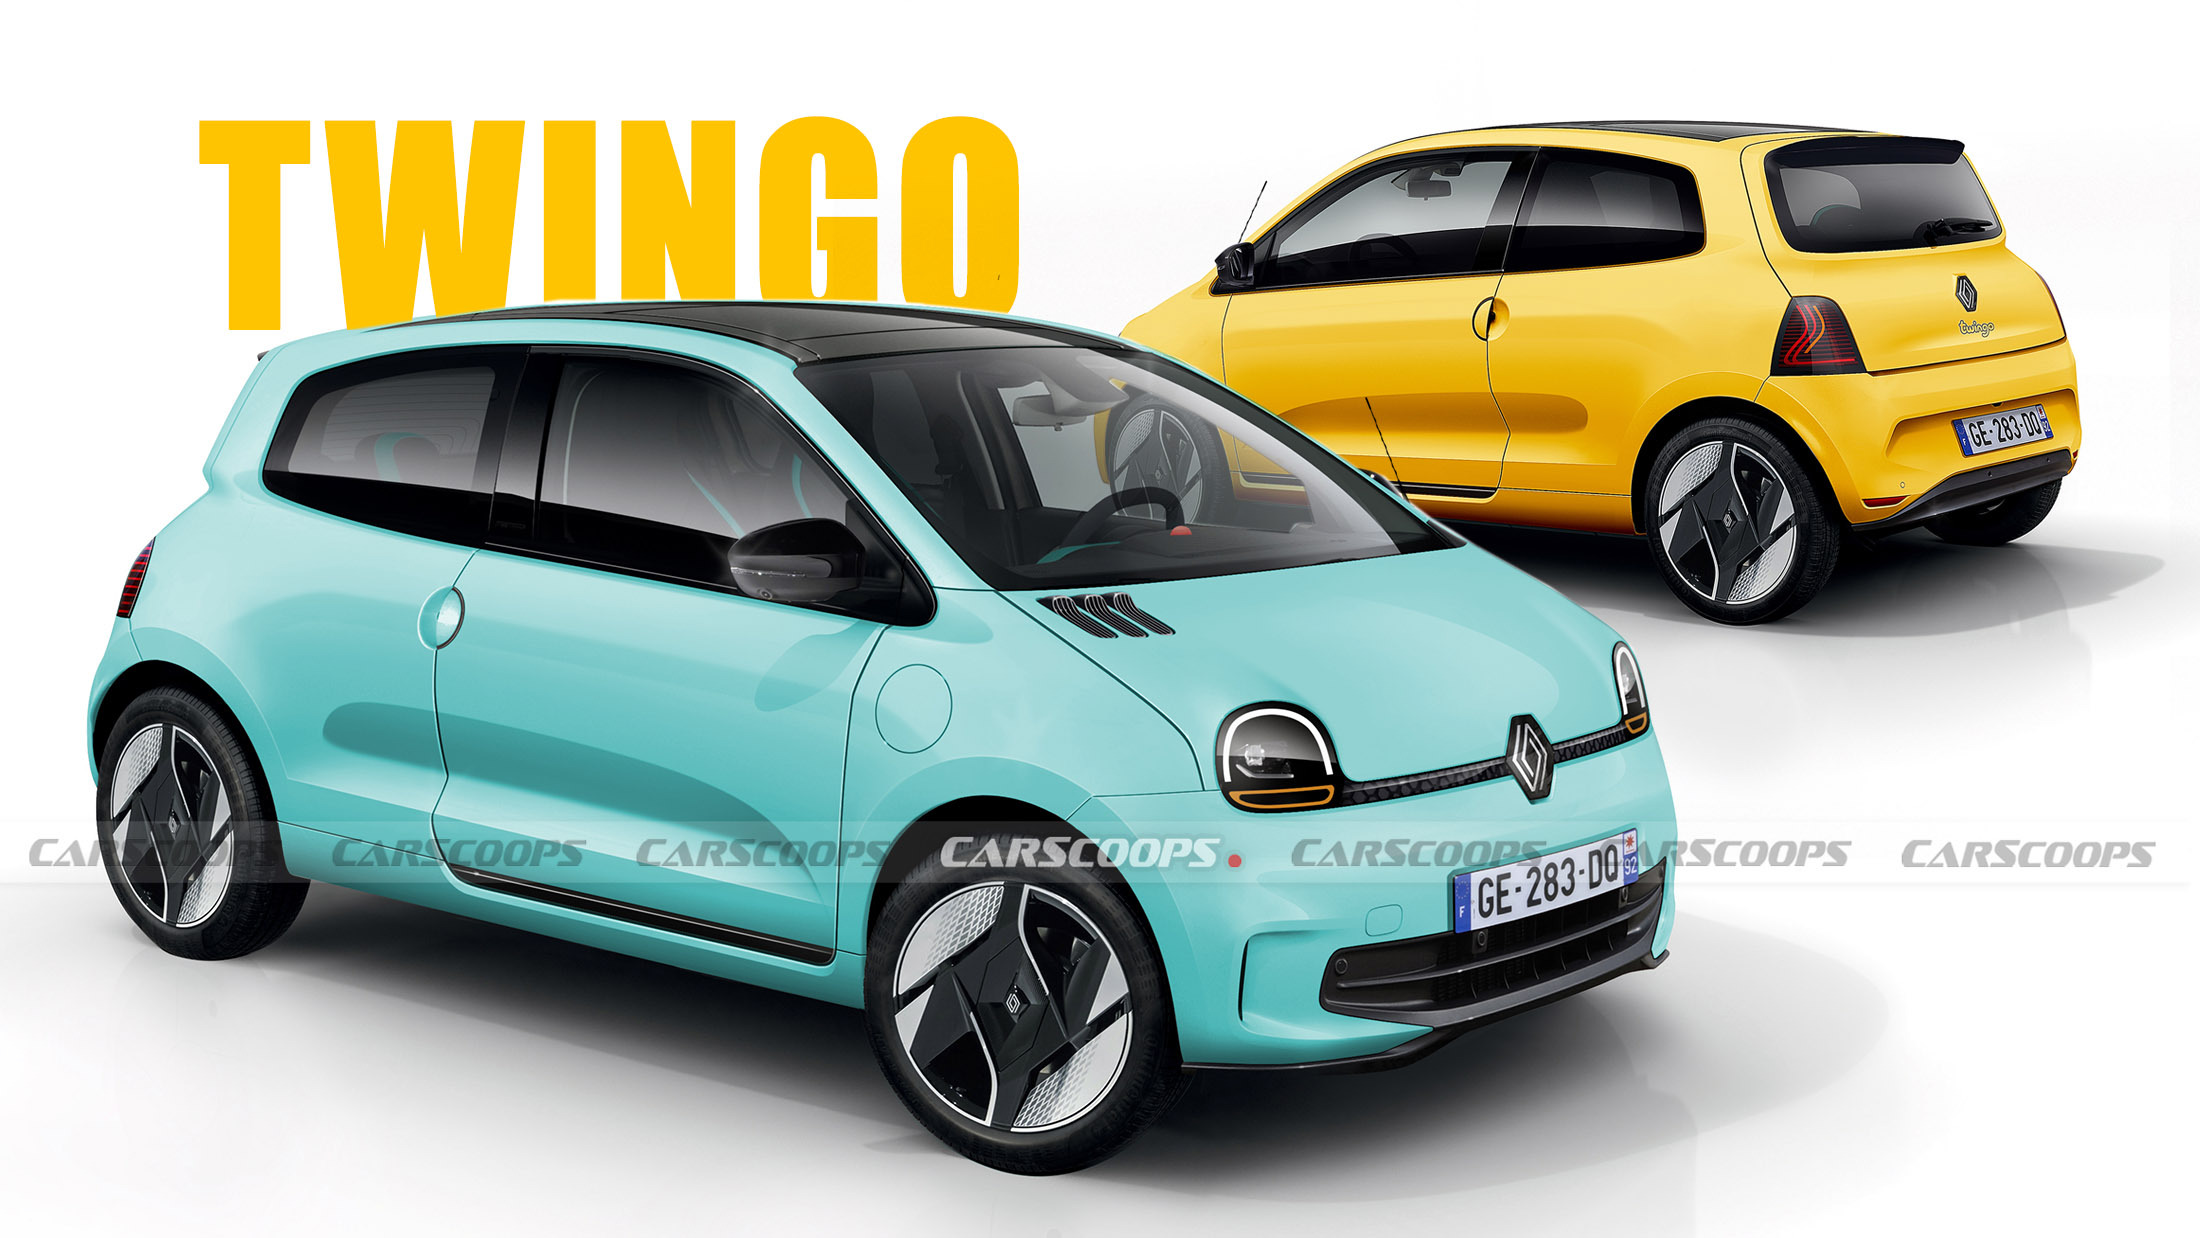 https://www.carscoops.com/wp-content/uploads/2023/12/2026-Renault-Twingo-Rendering-main-alt.jpg